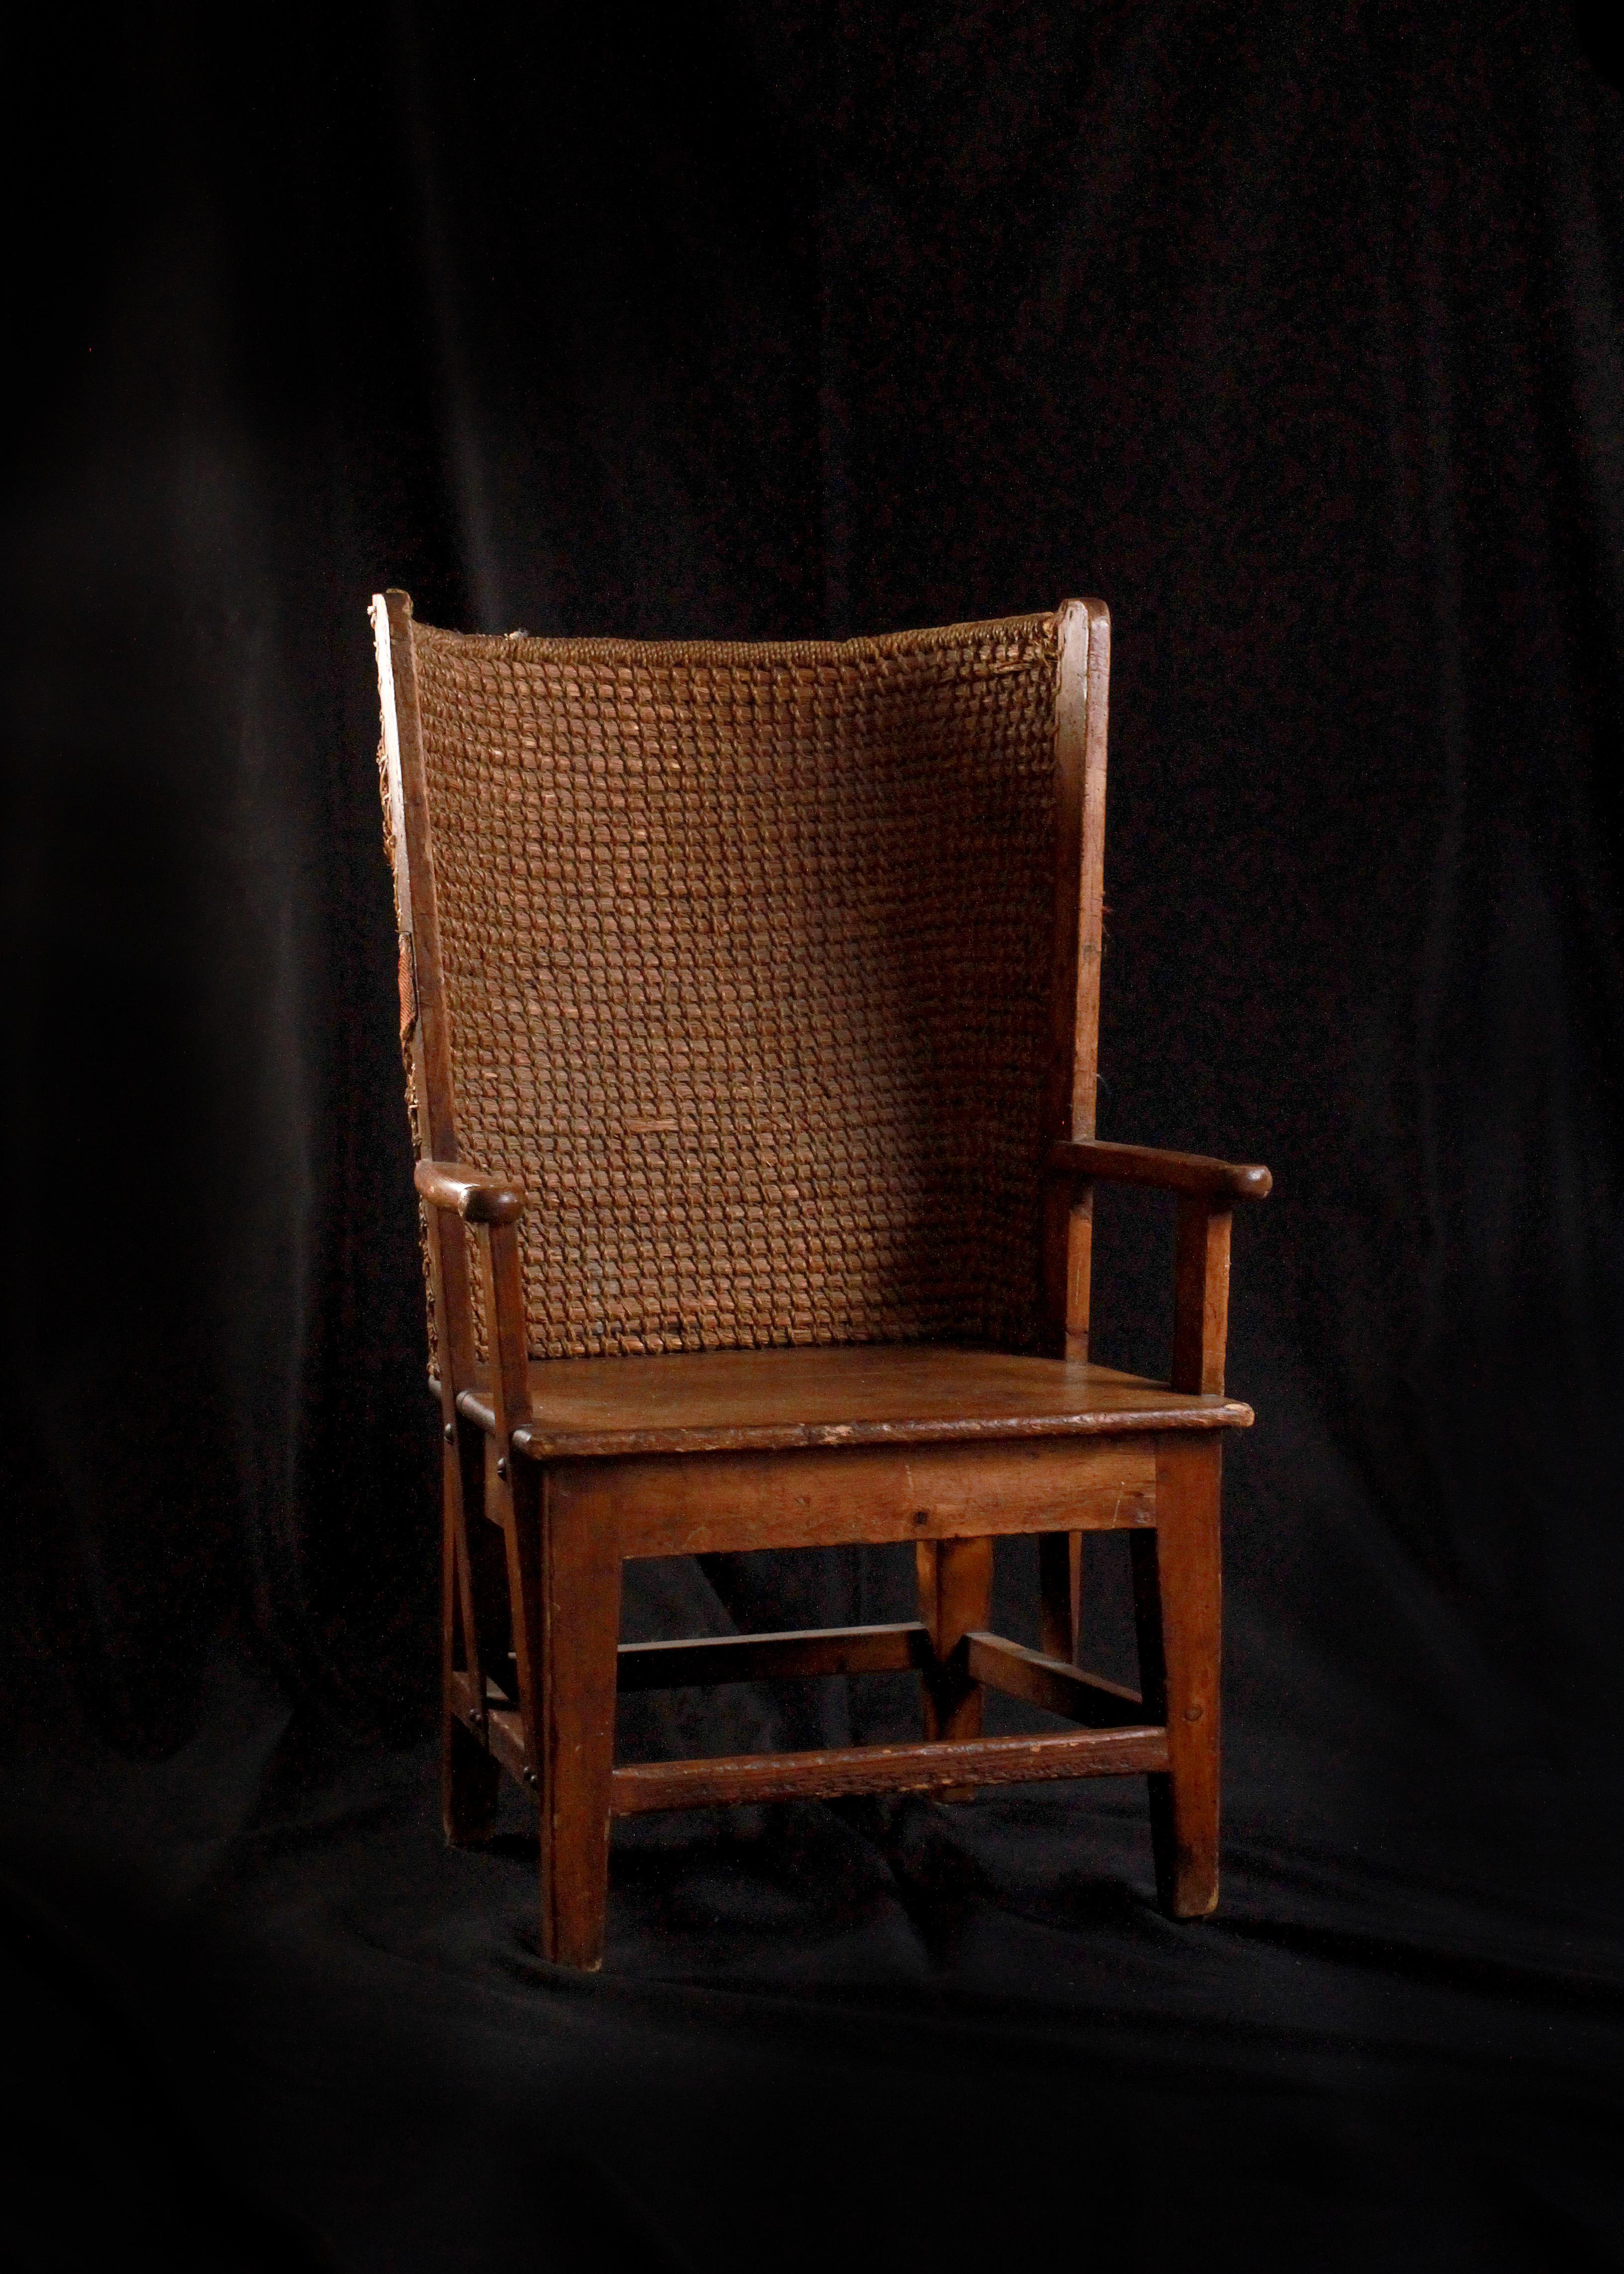 Cette exquise chaise de l'île des Orcades, qui témoigne de l'artisanat traditionnel, invite les visiteurs à remonter le temps. Sculpté avec soin et précision en 1900, il incarne le charme rustique et l'élégance pratique de l'archipel des